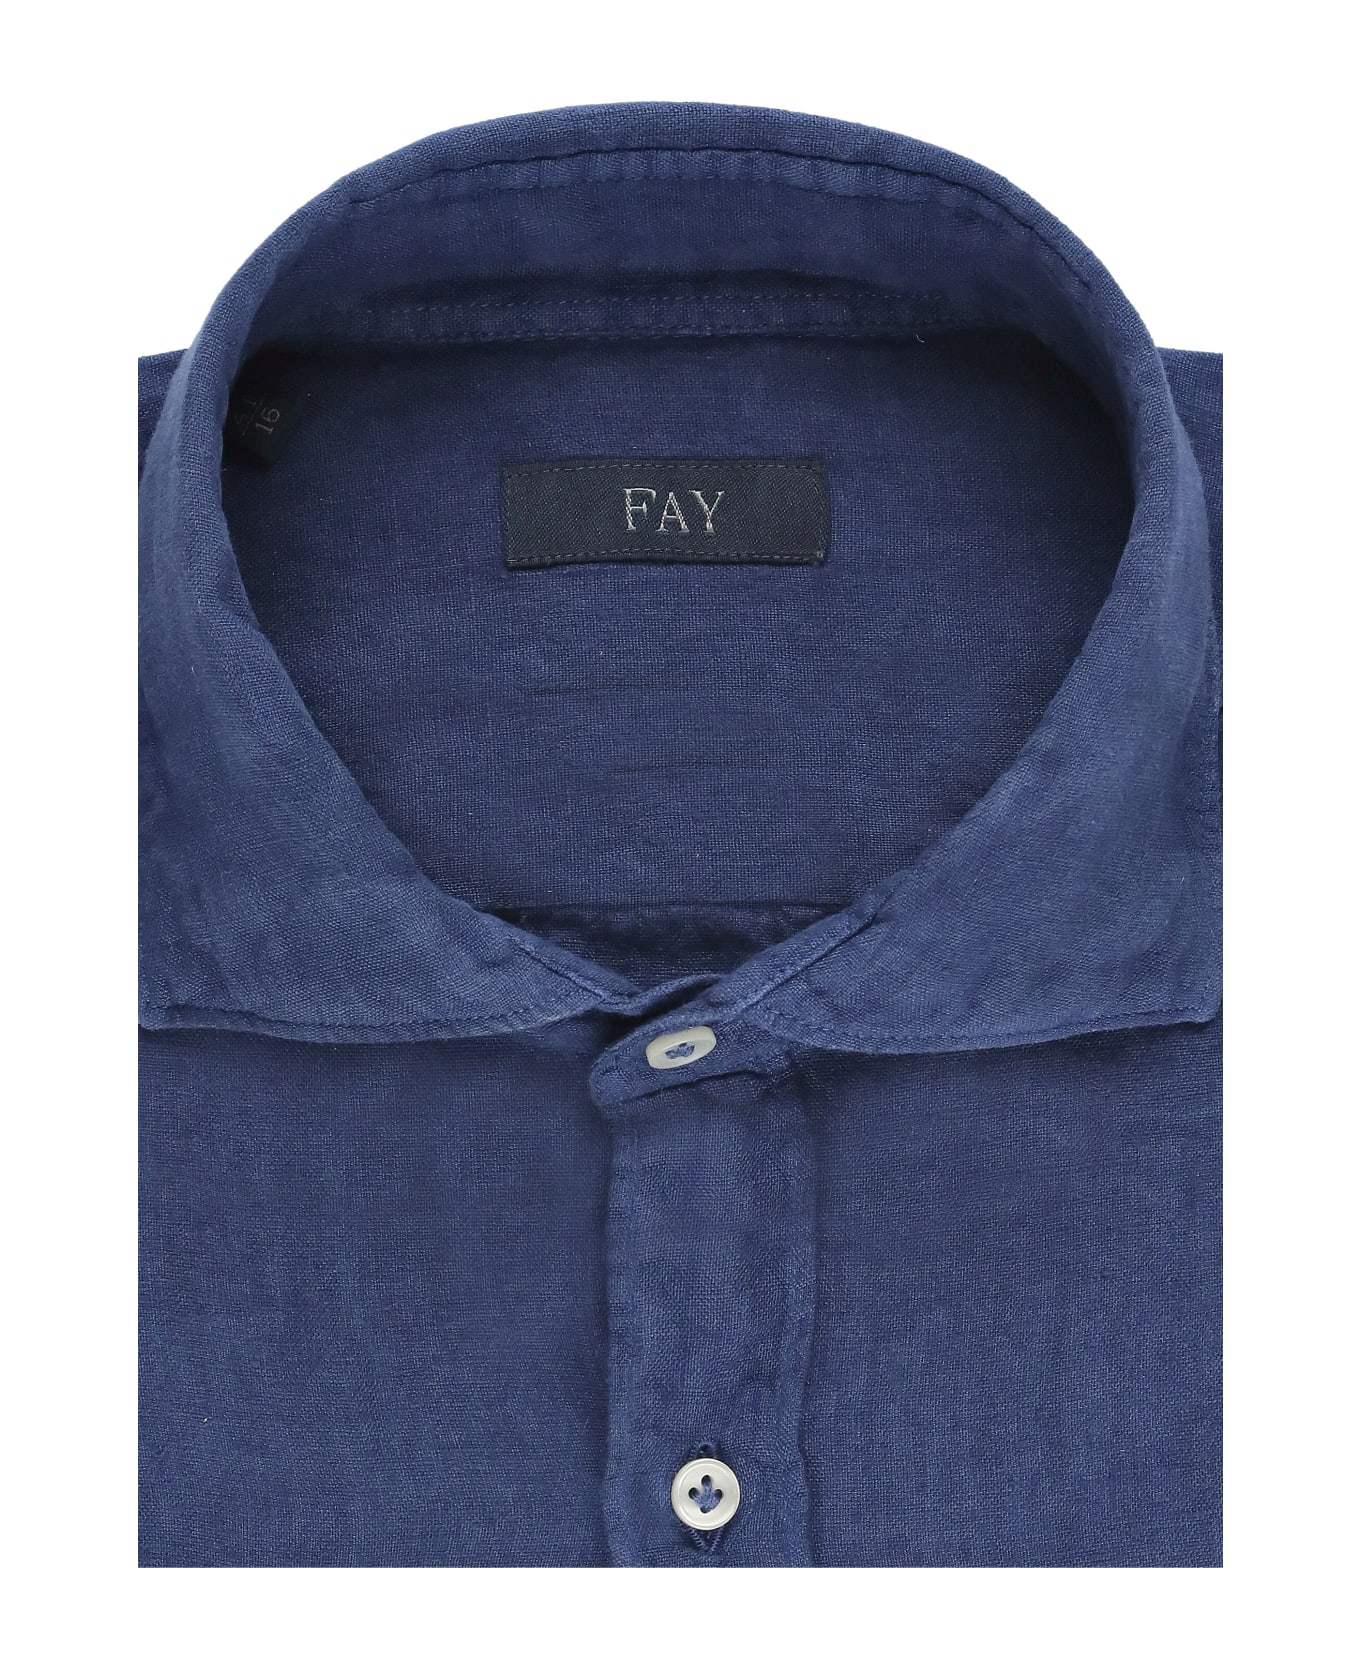 Fay Linen Shirt - Blue シャツ